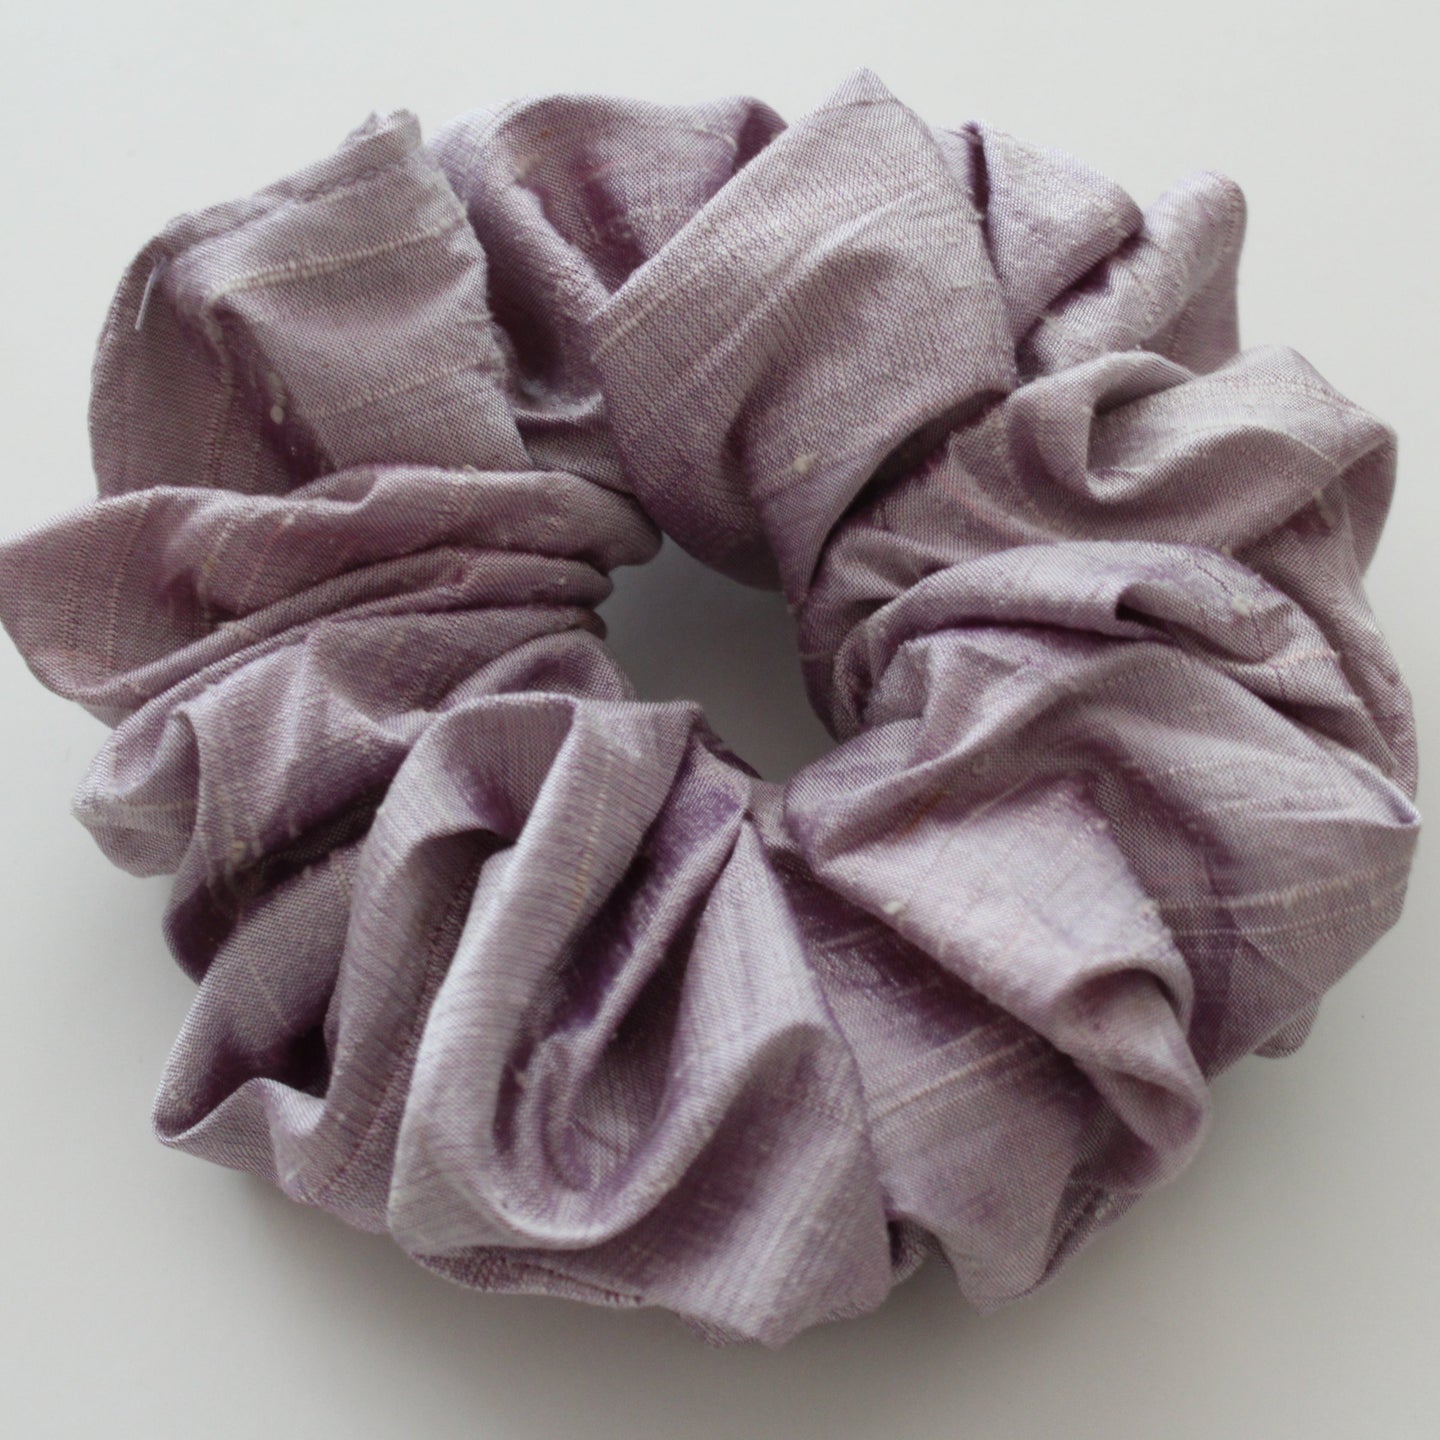 Lilac silk scrunchie handmade by YV, size medium